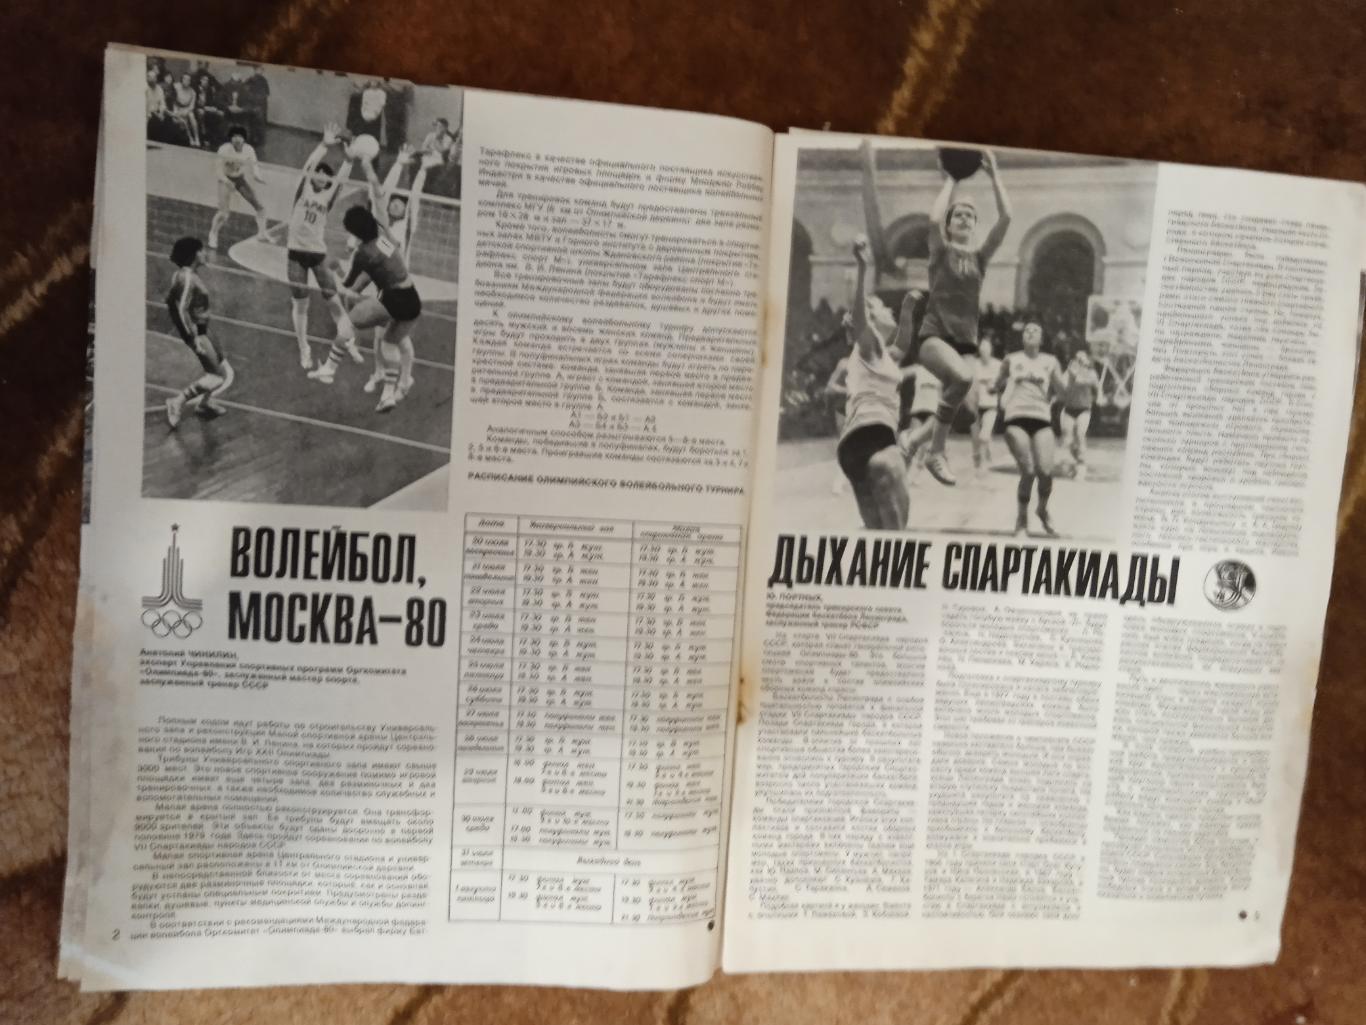 Журнал.Спортивные игры № 11 1978 г.Футбол,хоккей,волейбол,регби.ЧМ 78 Аргентина. 1